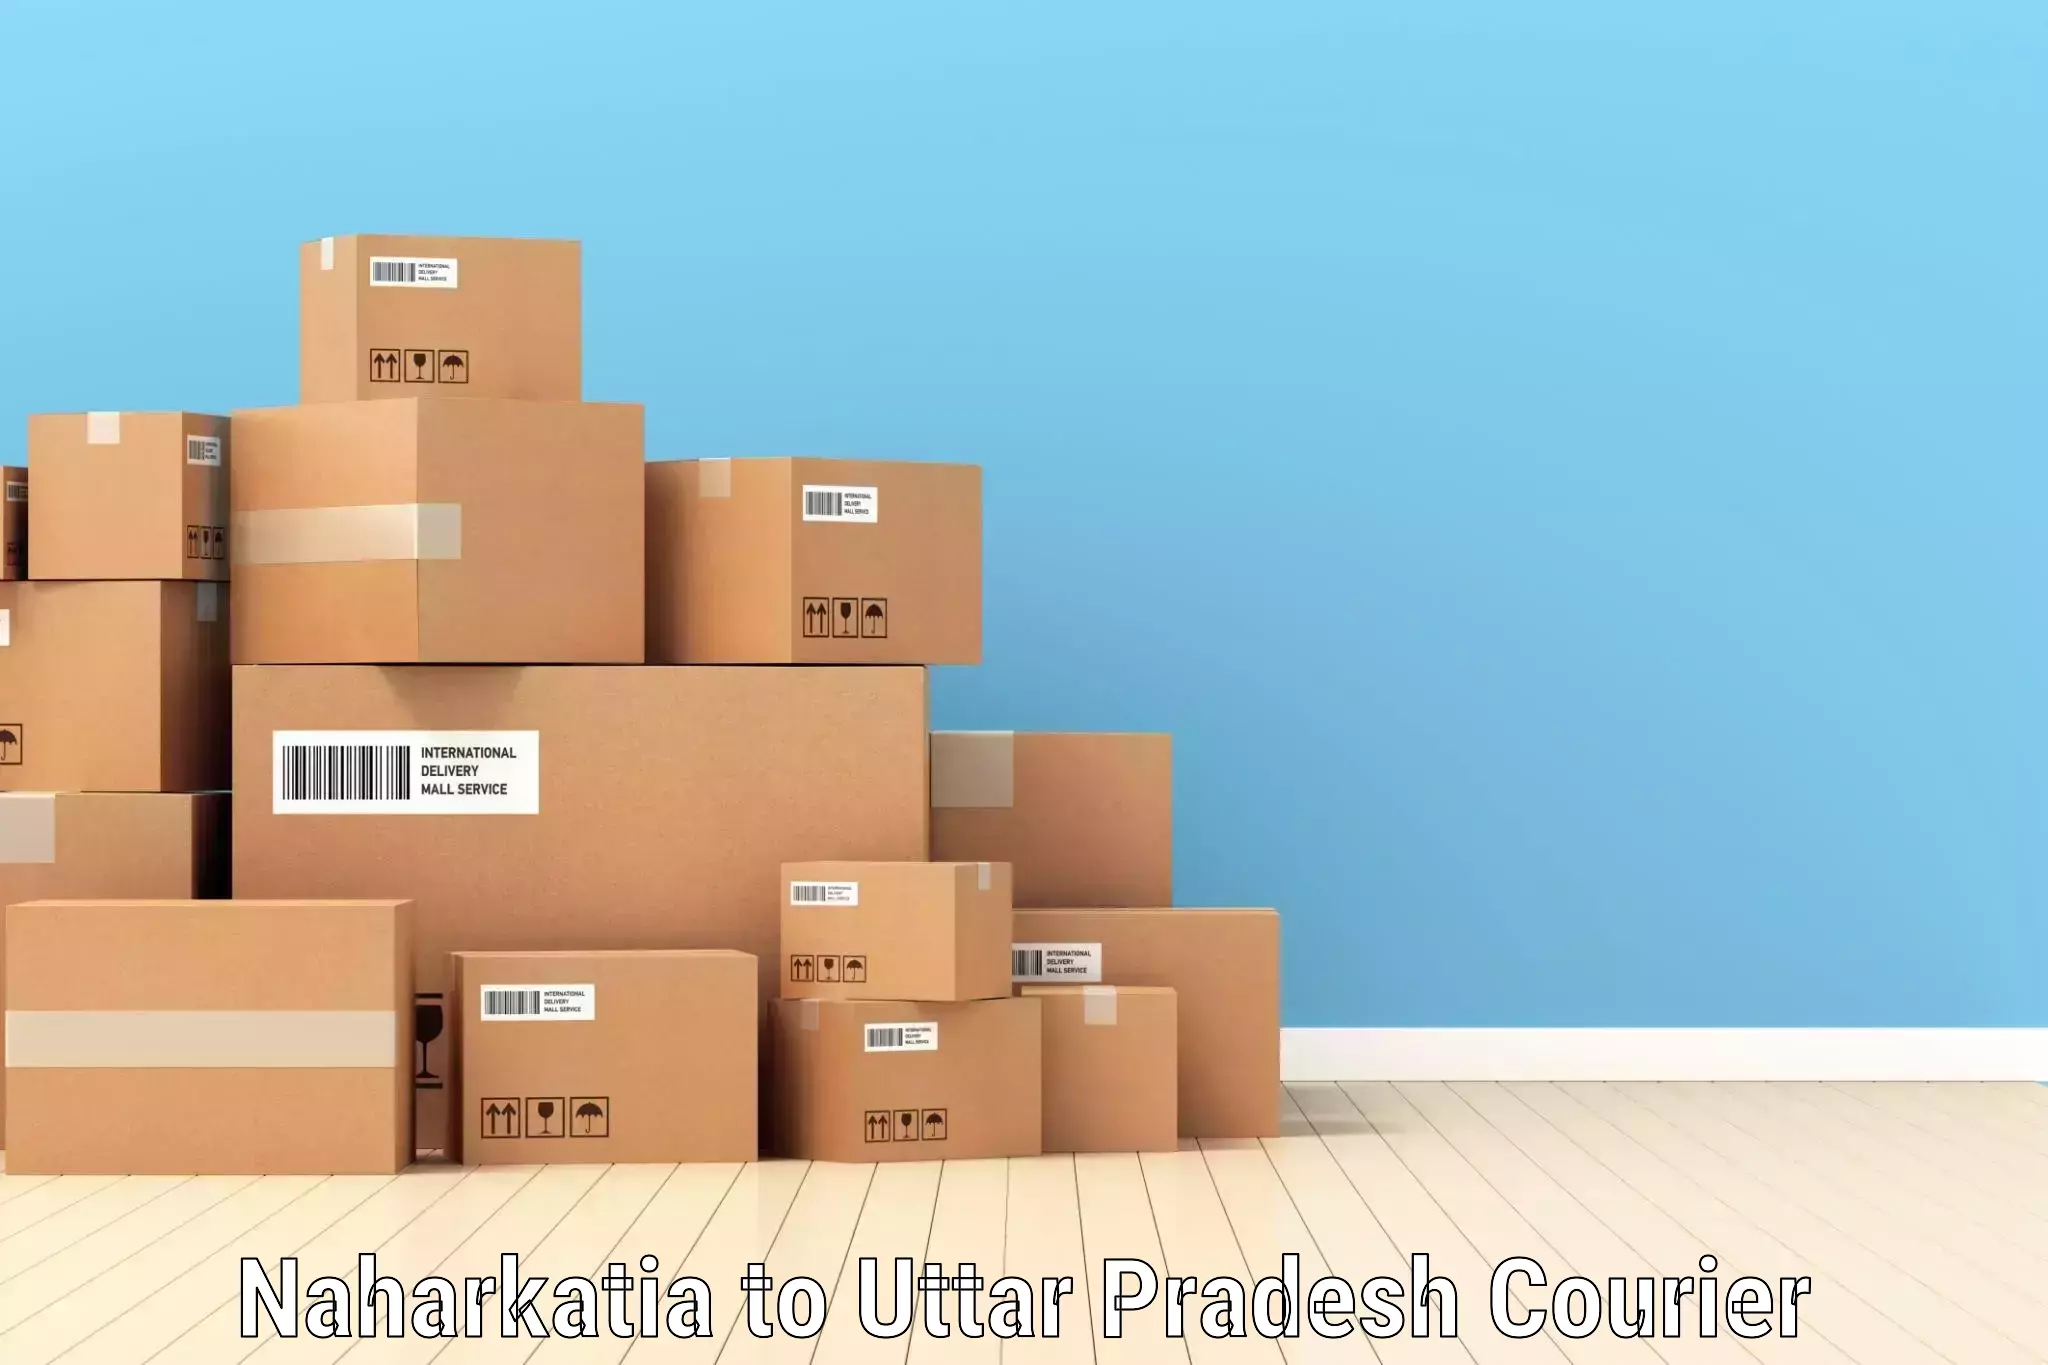 Efficient parcel service Naharkatia to Tilhar